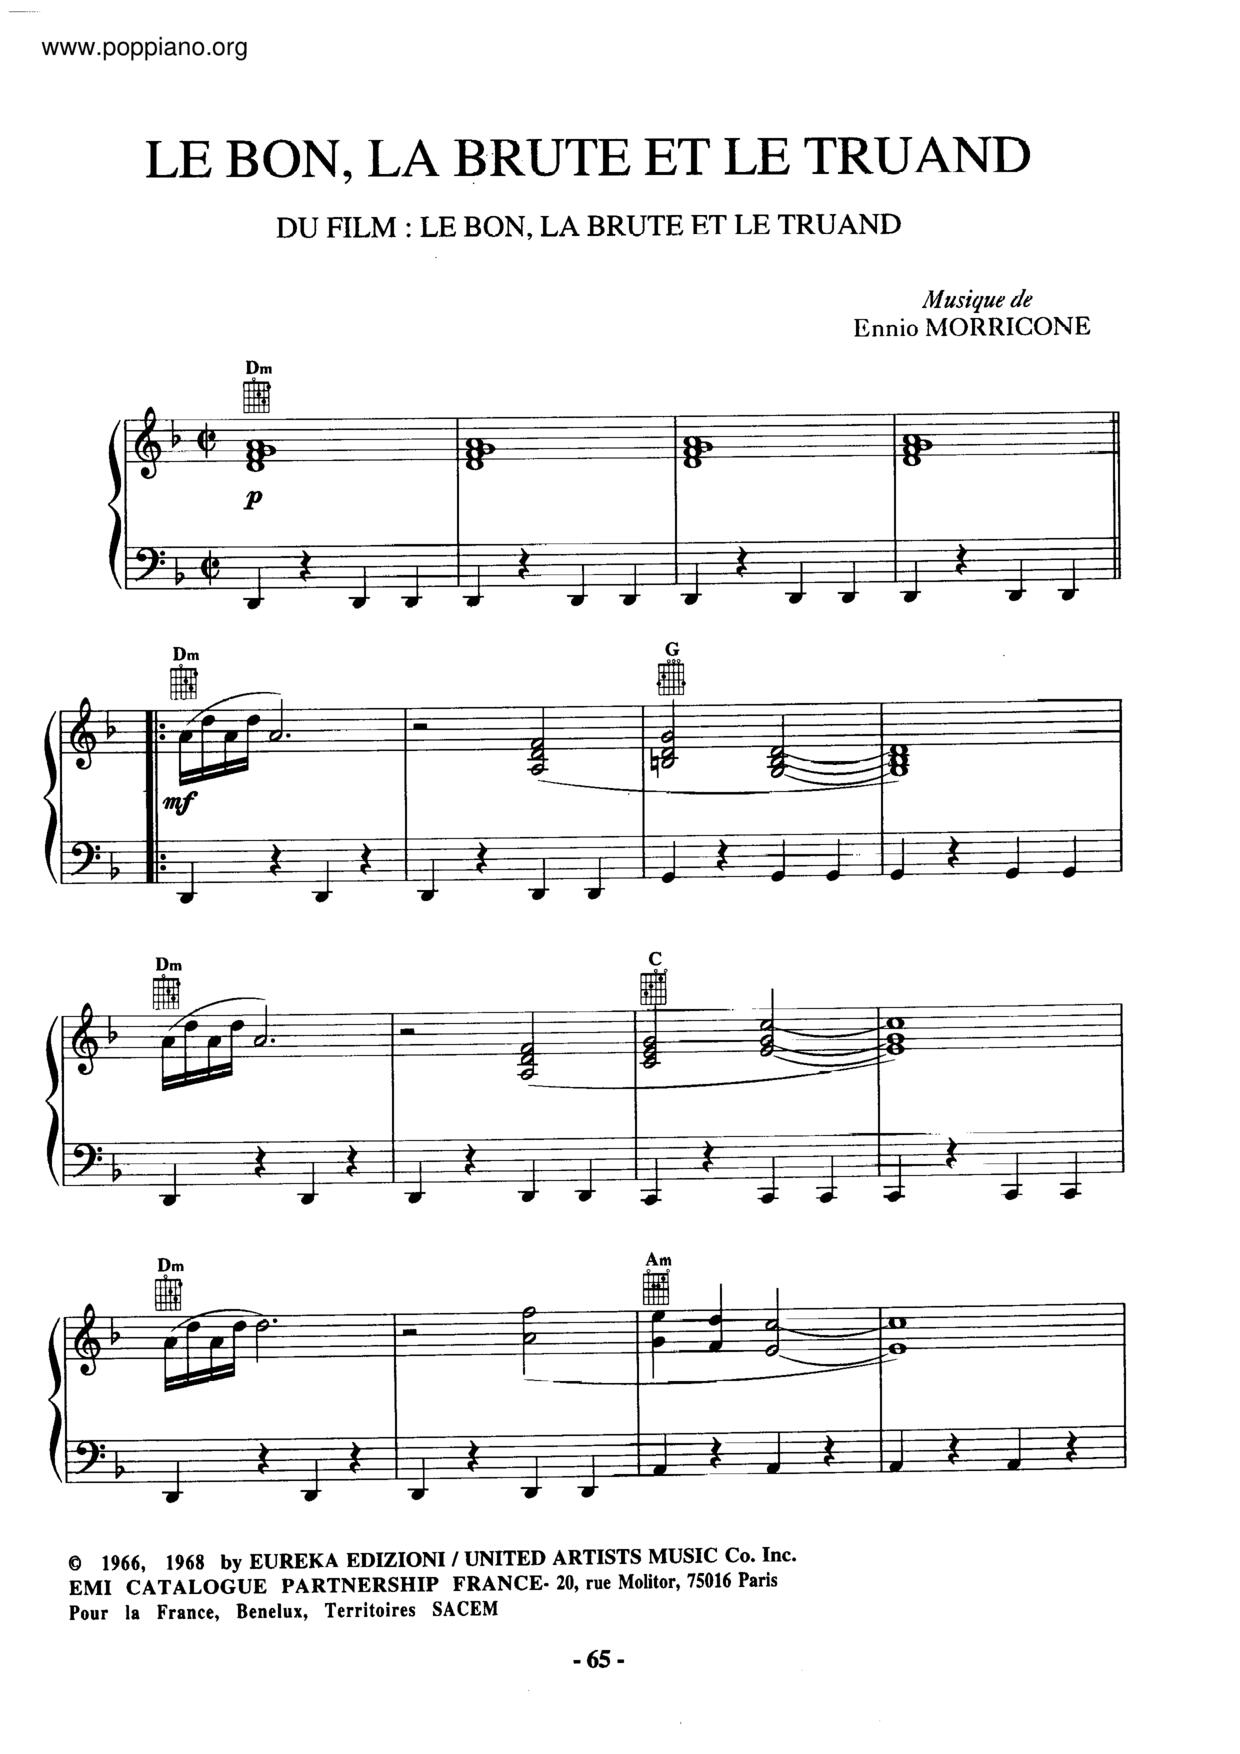 Le Bon, La Brute Et Le Truandピアノ譜